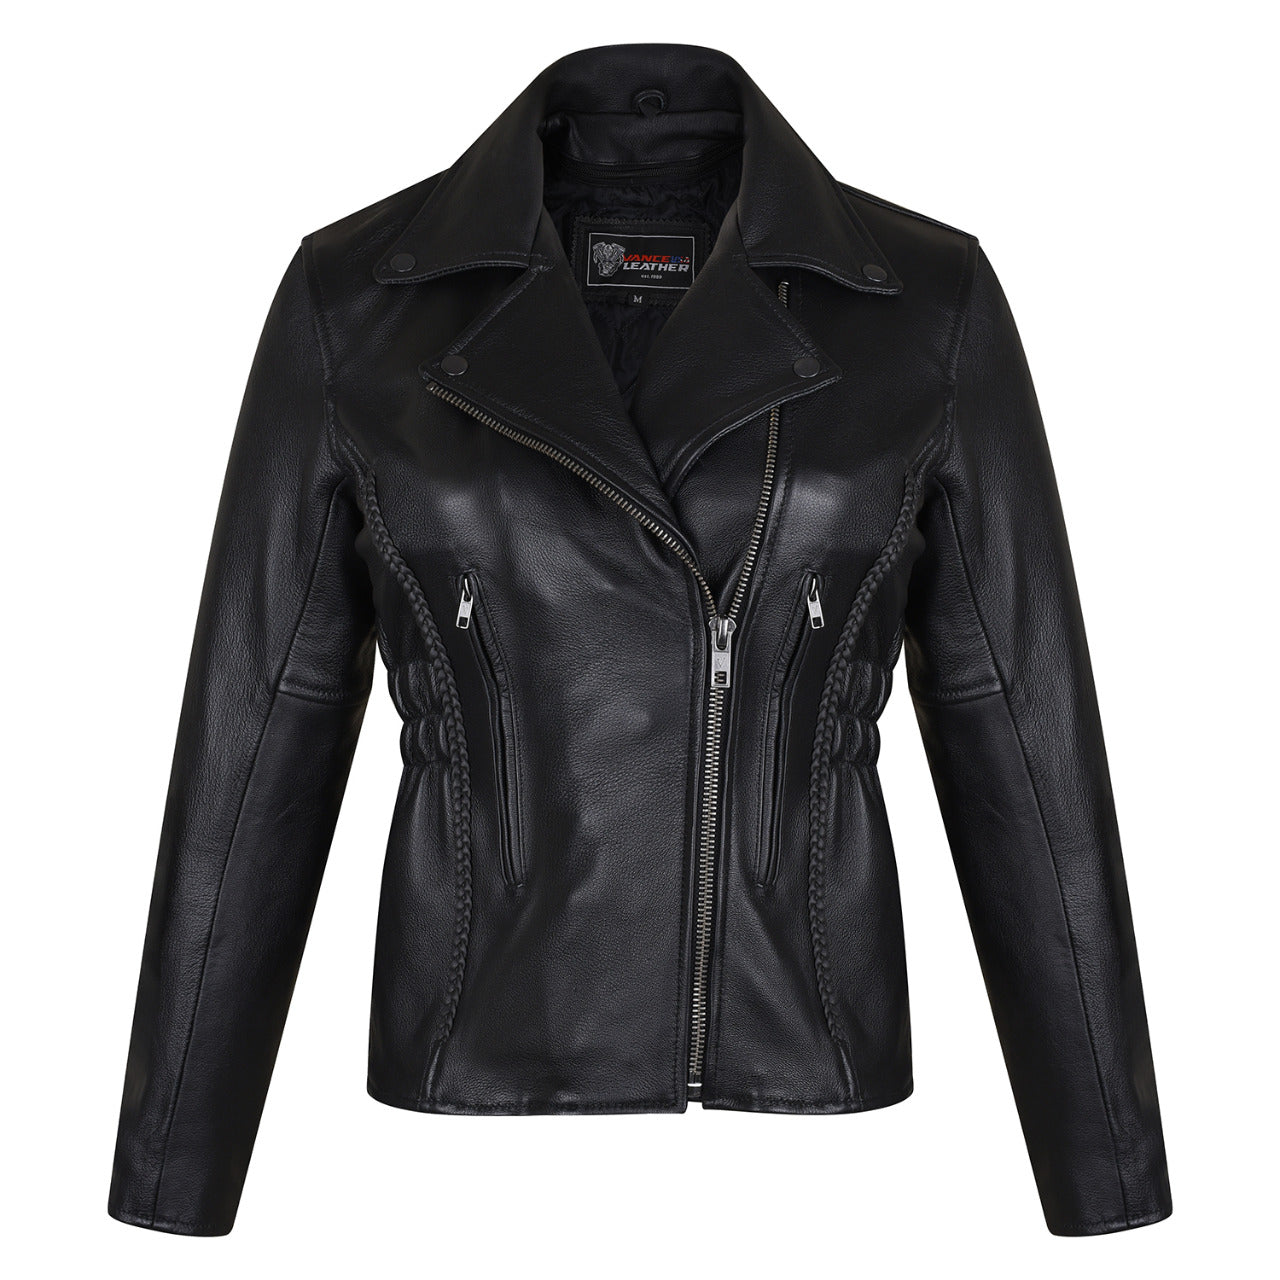 VL615 Vance Leather Ladies Premium Cowhide Braid and Stud Motorcycle Leather Jacket